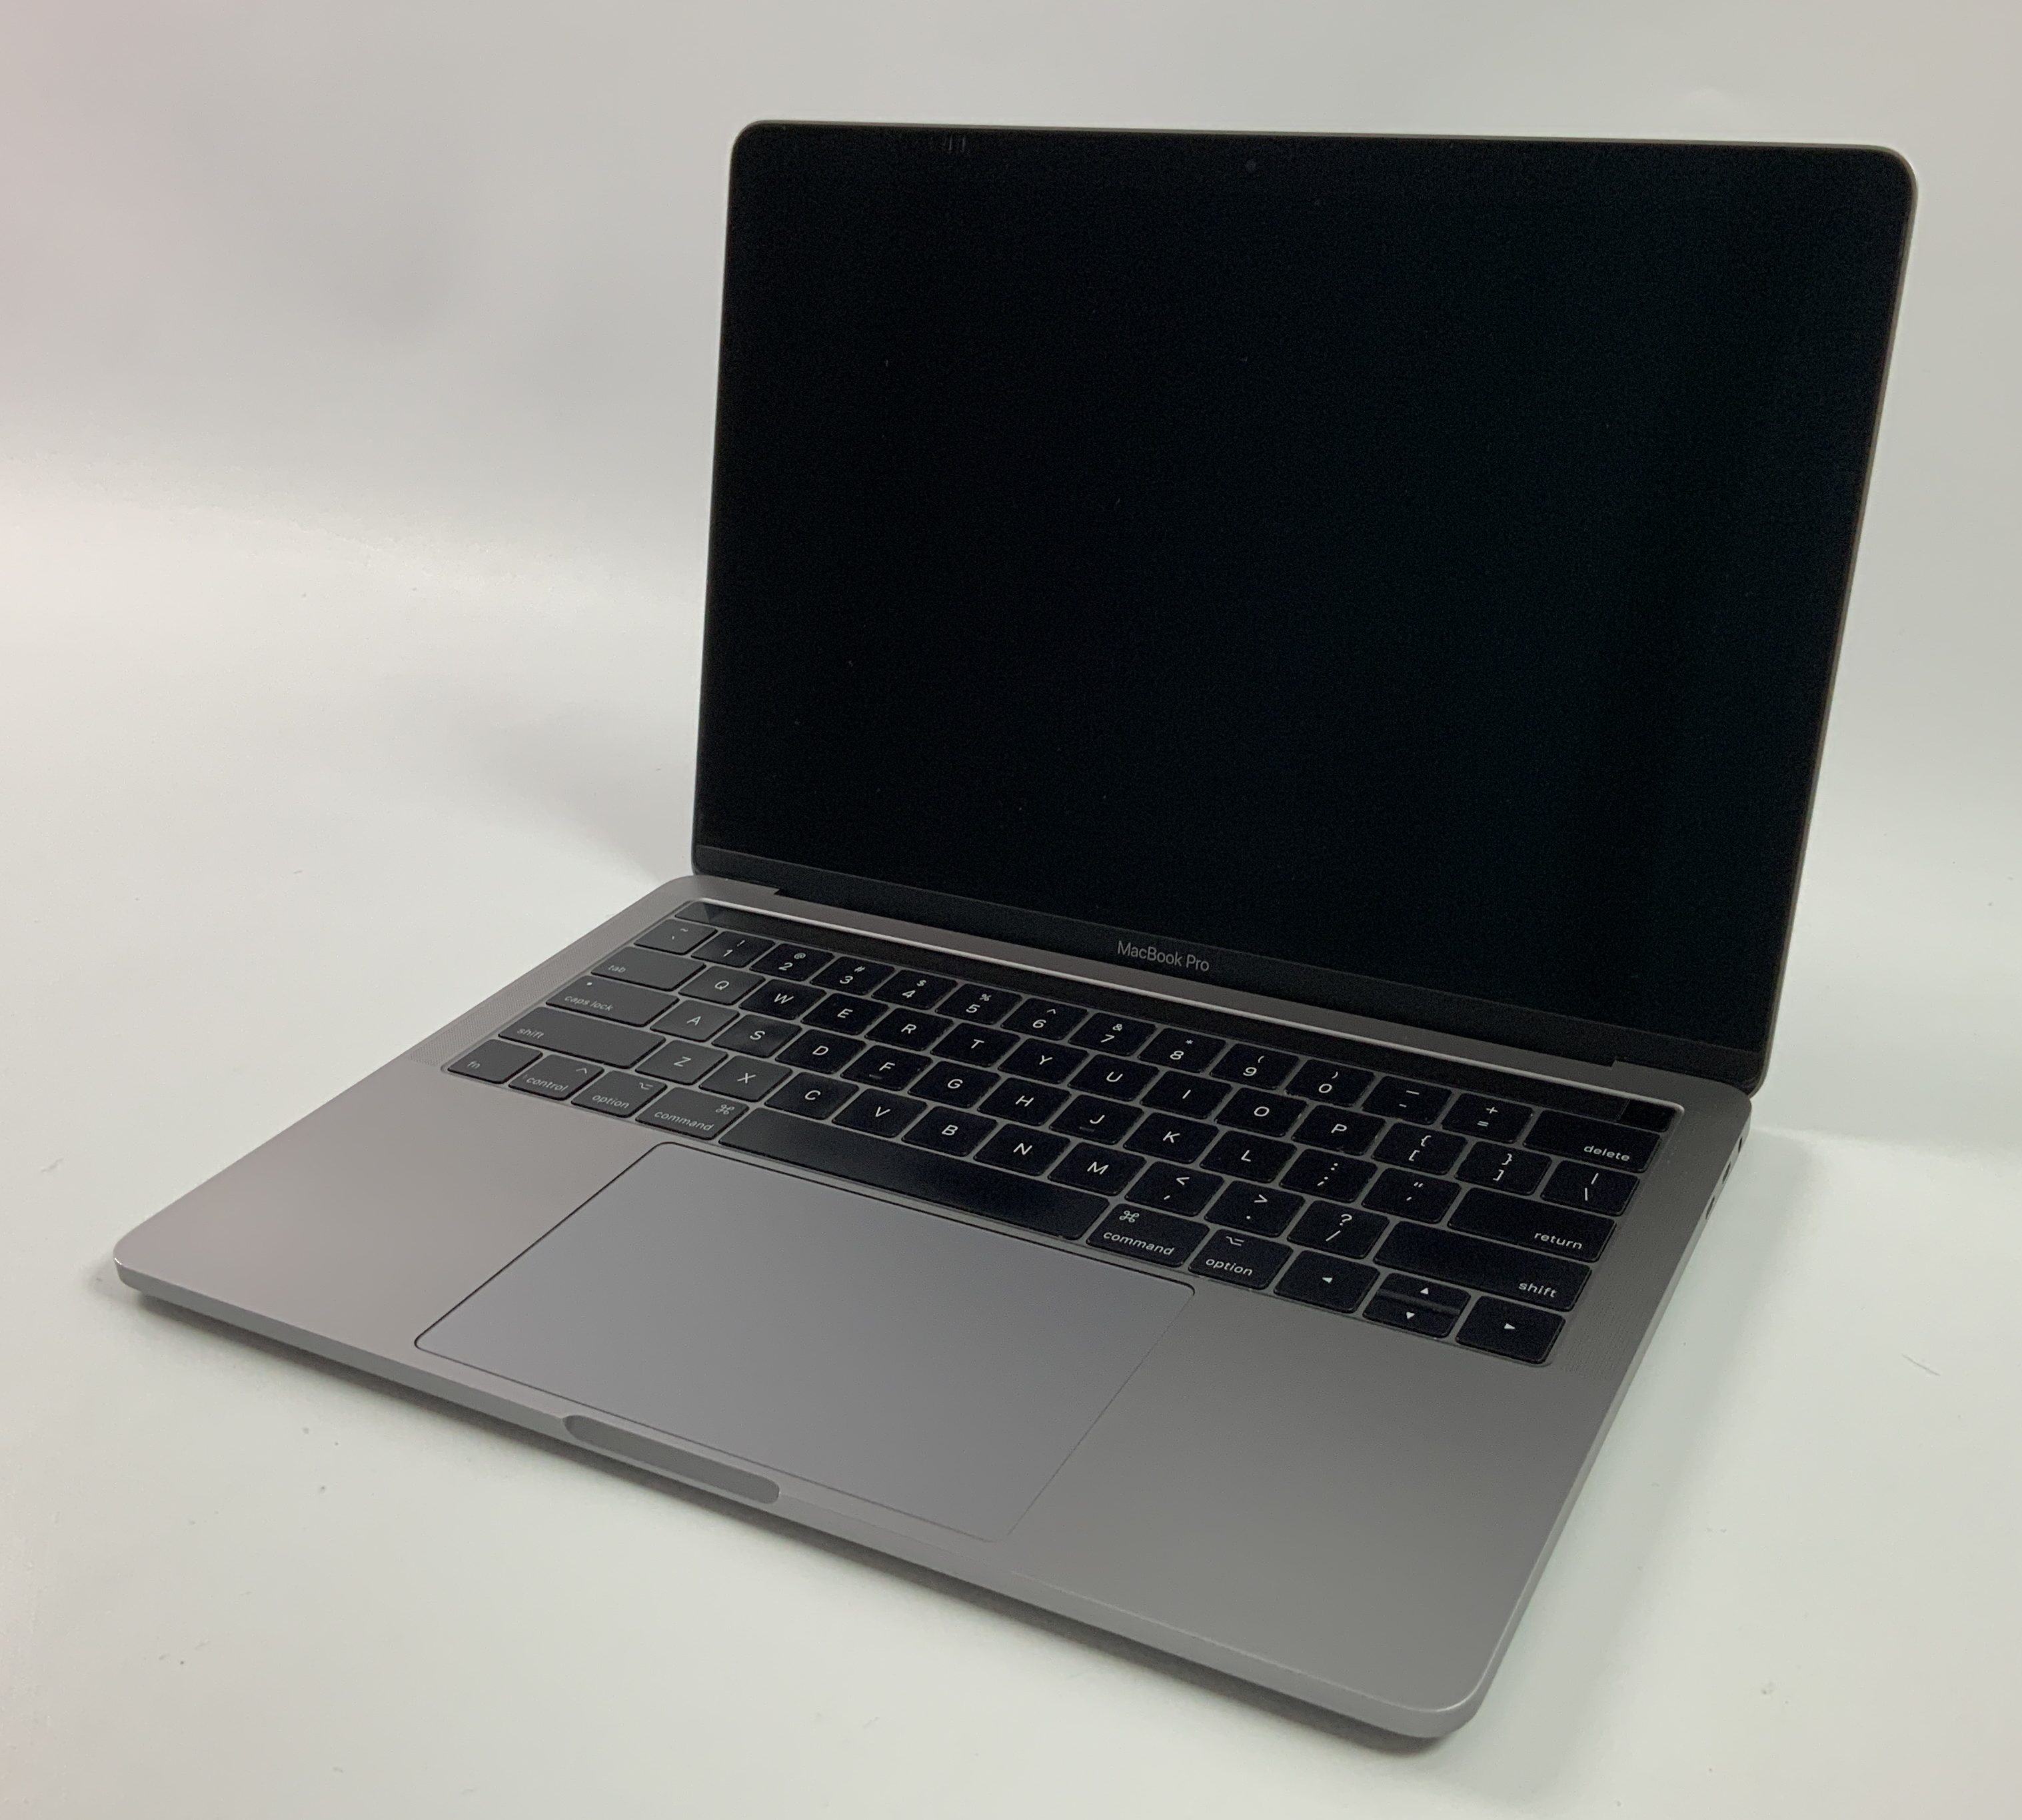 MacBook Pro 13" 4TBT Mid 2017 (Intel Core i5 3.1 GHz 8 GB RAM 256 GB SSD), Space Gray, Intel Core i5 3.1 GHz, 8 GB RAM, 256 GB SSD, immagine 1